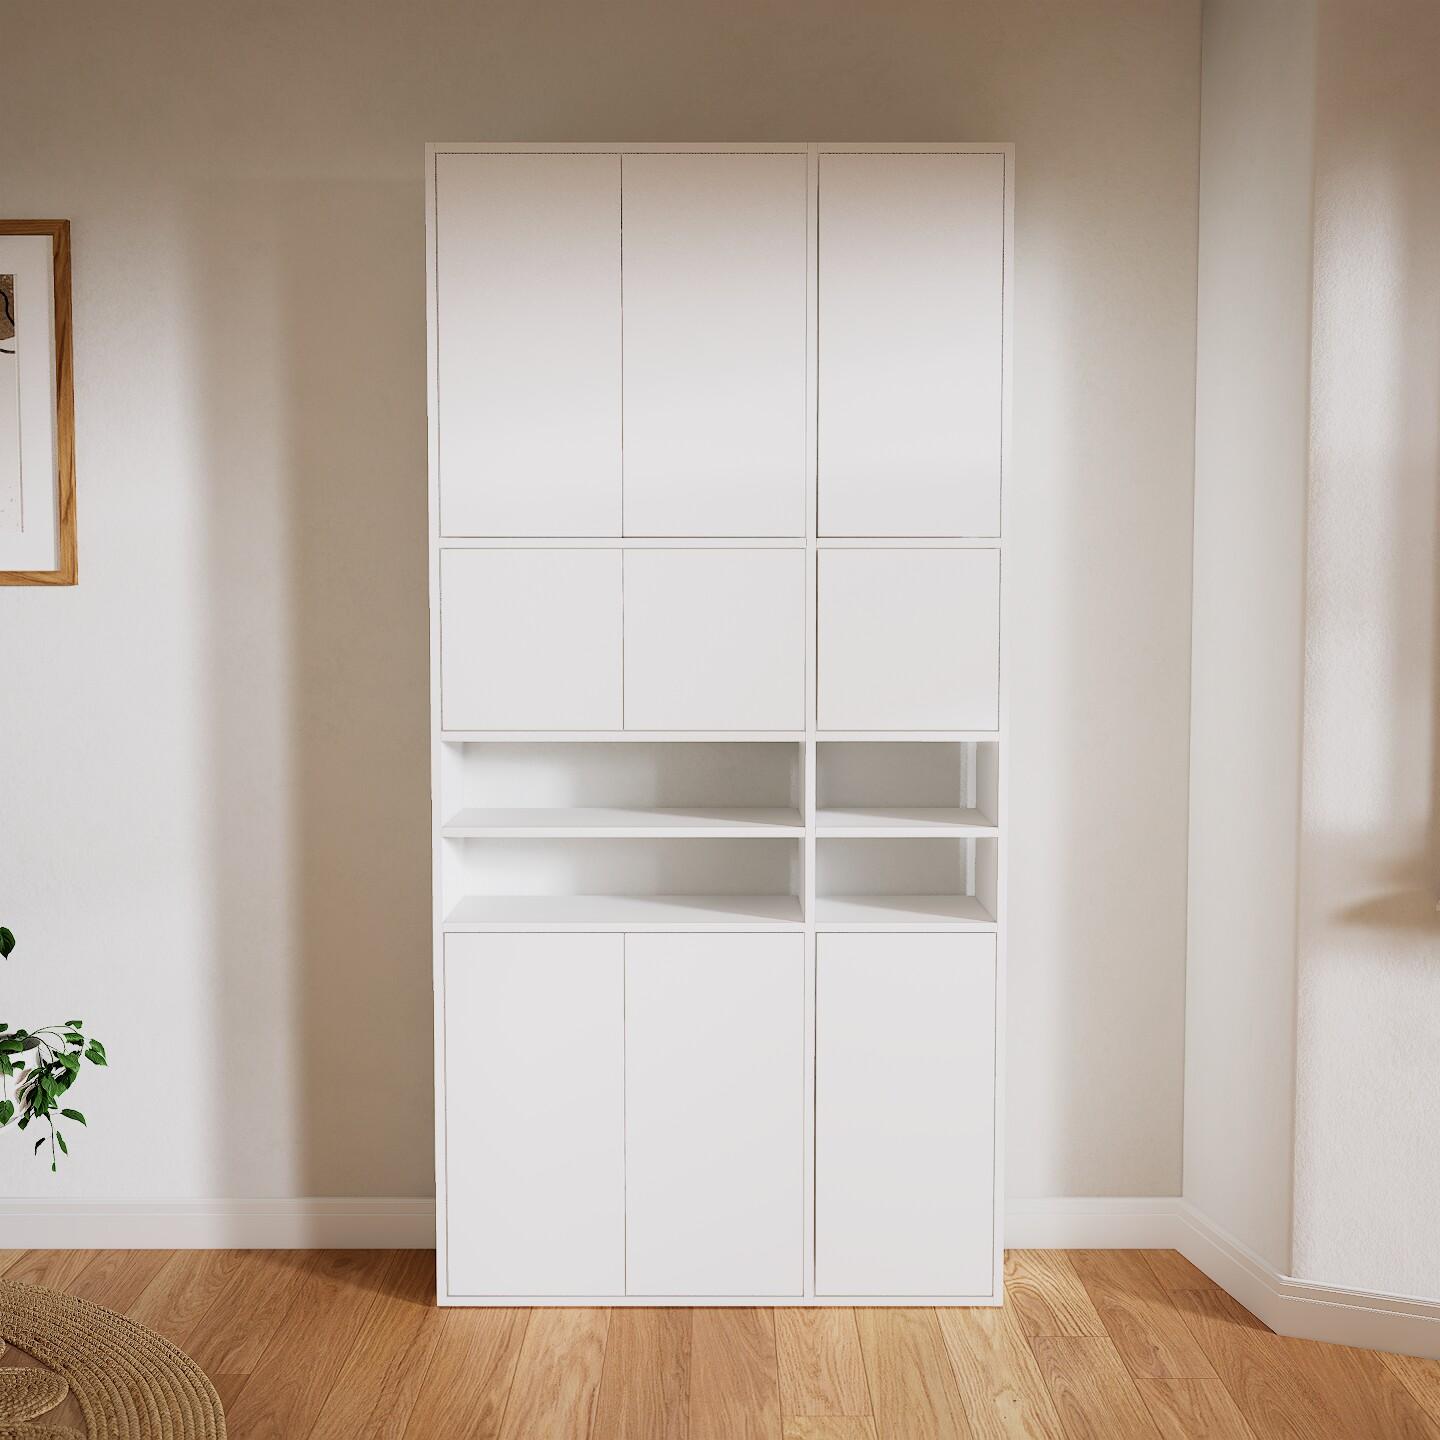 Wohnwand Weiß - Individuelle Designer-Regalwand: Türen in Weiß - Hochwertige Materialien - 116 x 233 x 35 cm, Konfigurator von MYCS